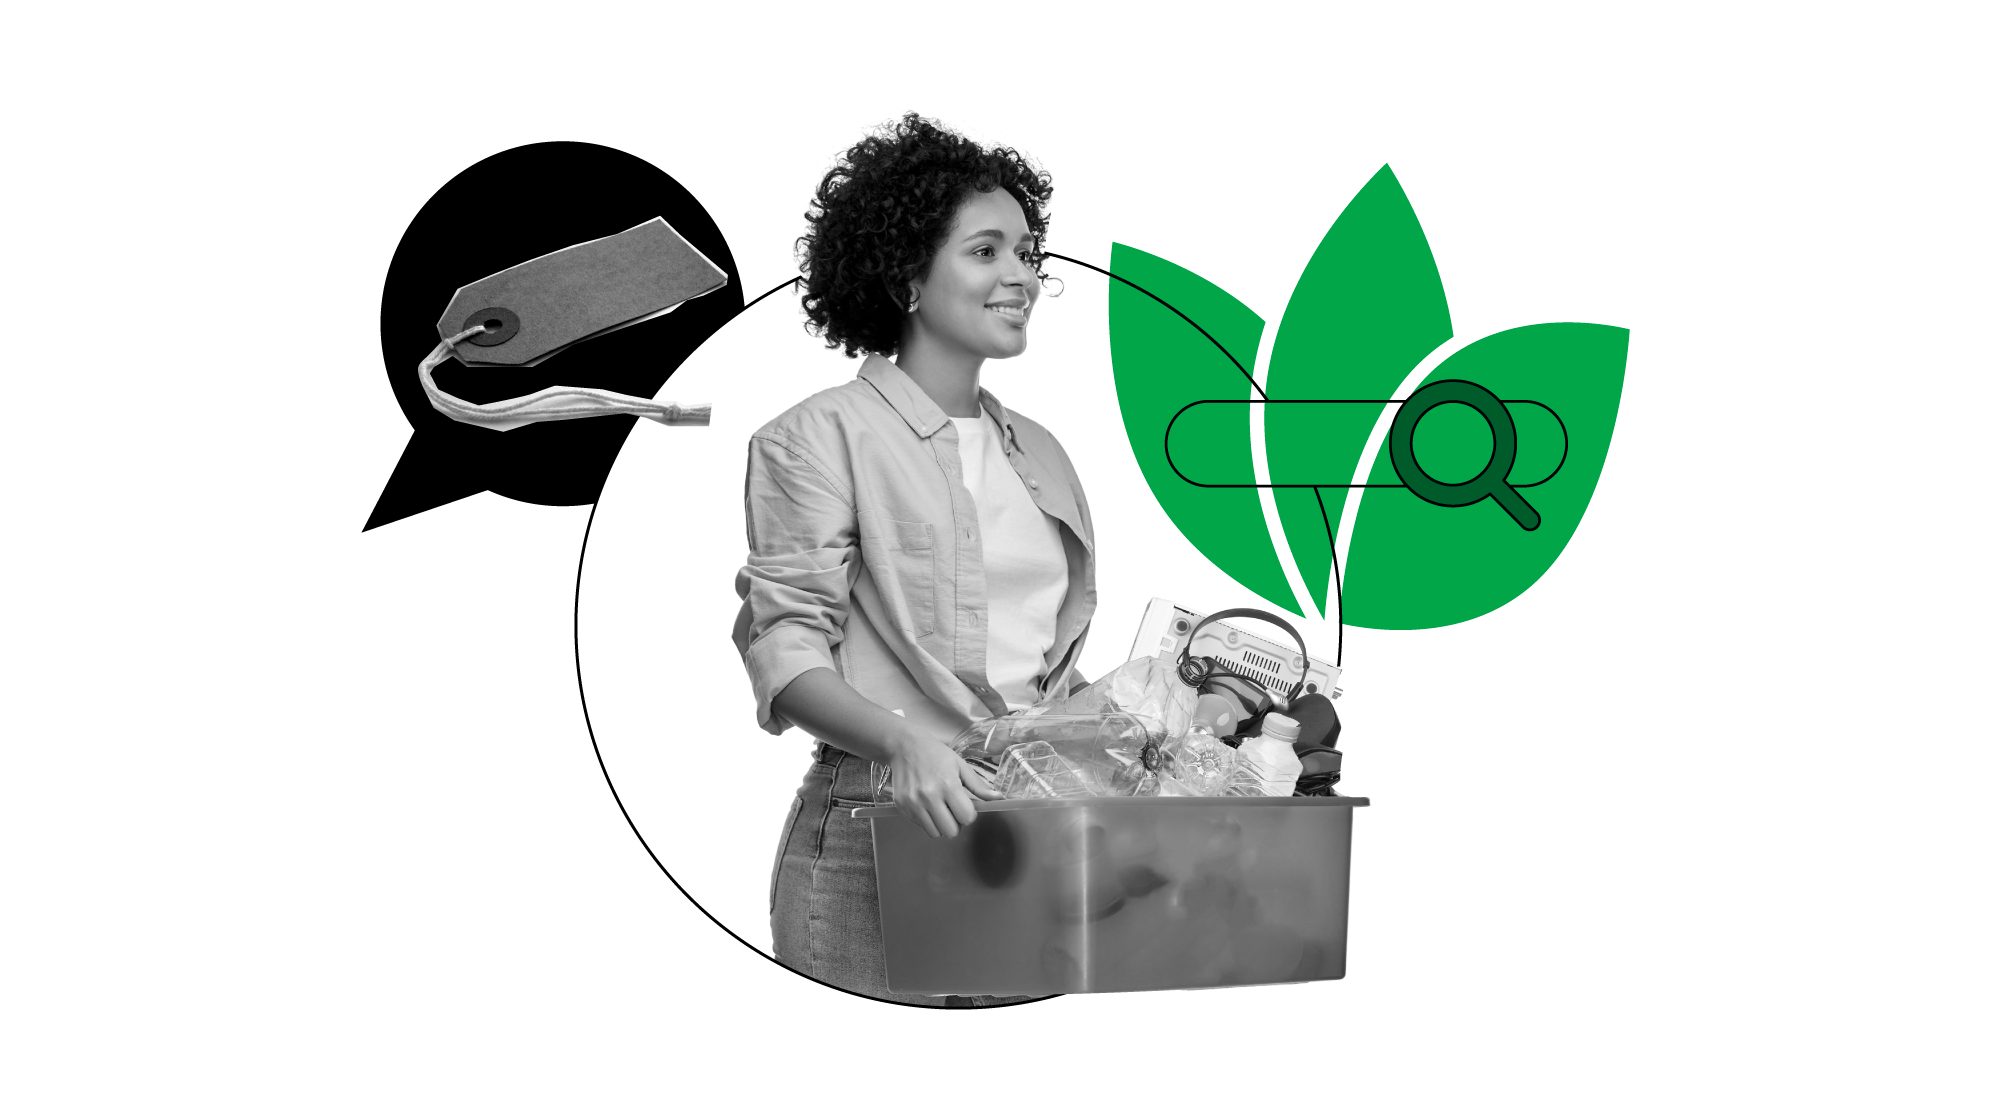 Uma pessoa negra de cabelos curtos e cacheados carrega uma caixa com produtos recicláveis. Ela está cercada por um balão de diálogo com uma etiqueta e um ícone de busca com uma planta.